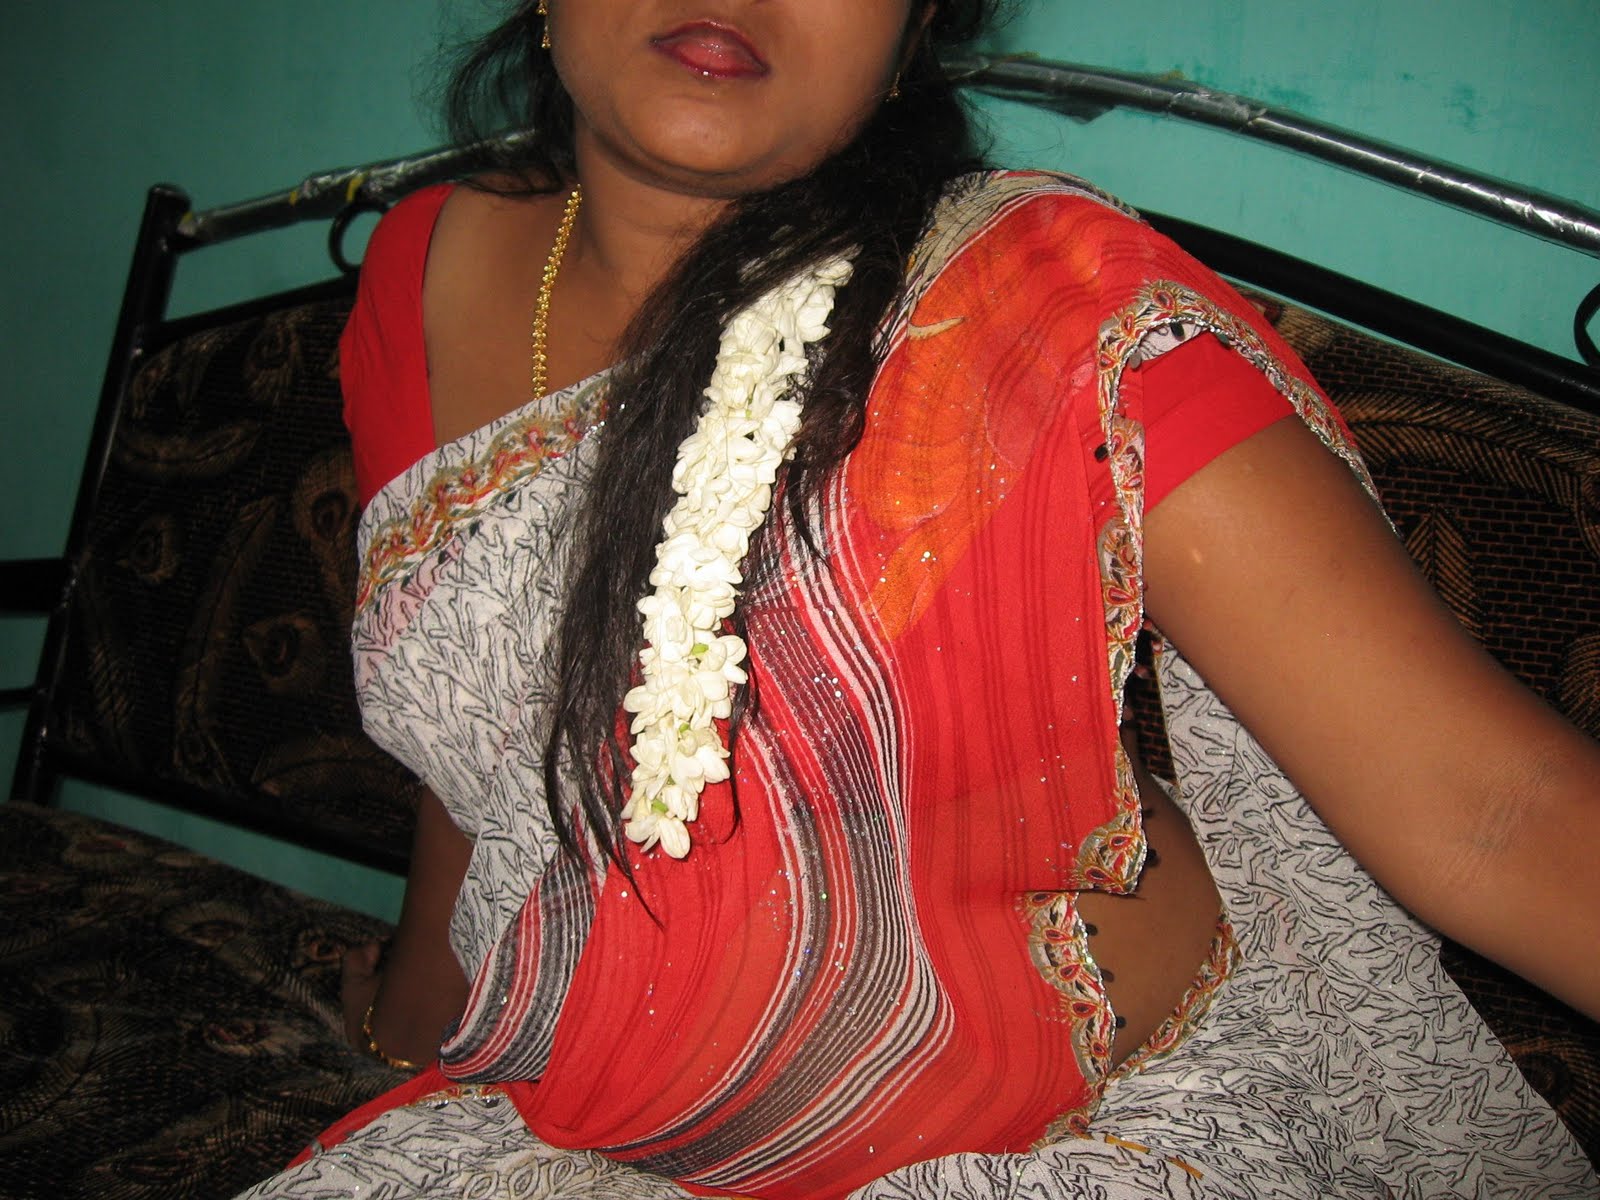 11 beste bilder über hot indian didi boudi aunty auf